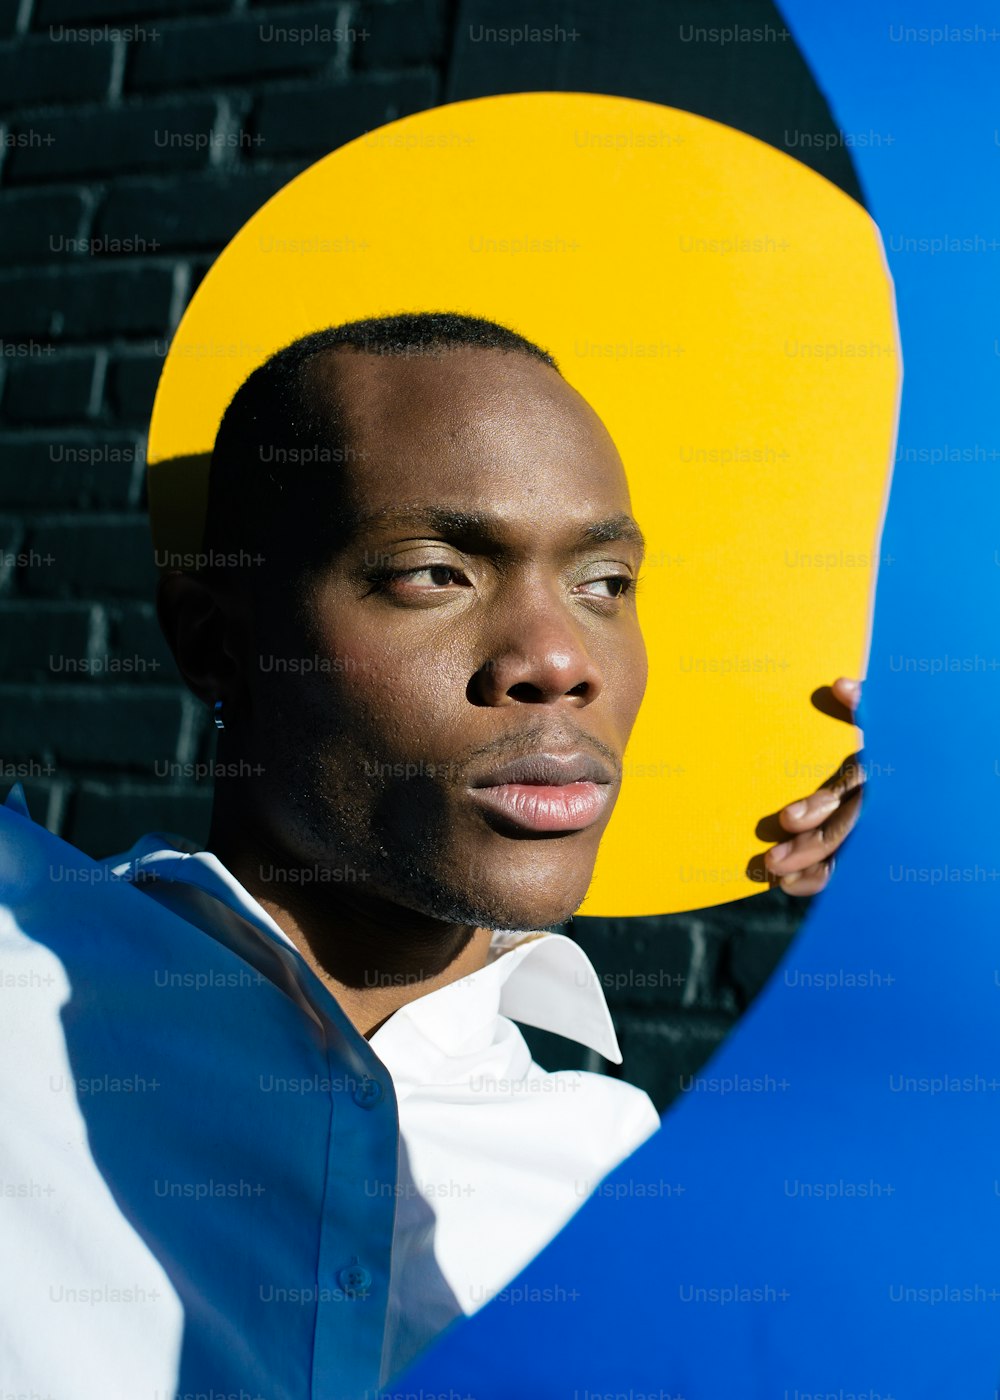 Ein Mann hält einen großen gelben und blauen Gegenstand